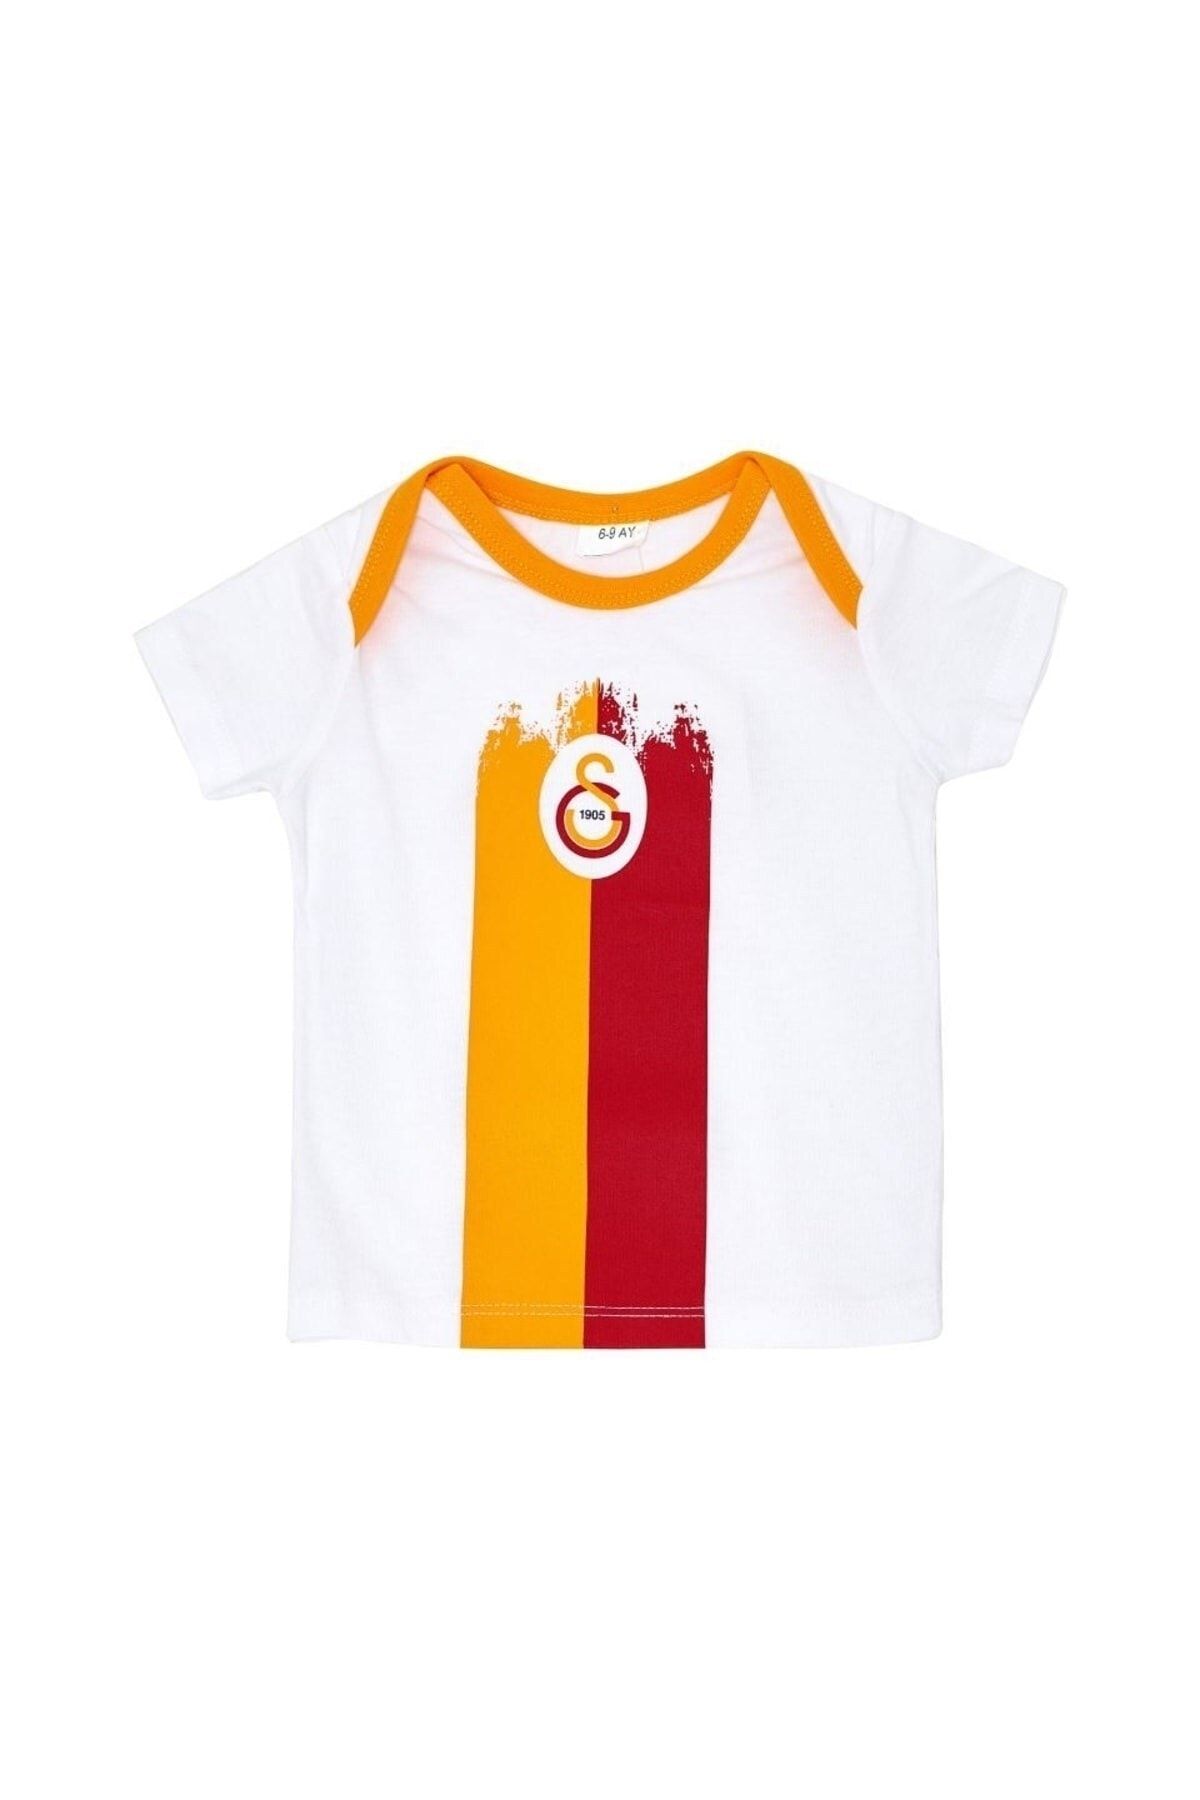 Galatasaray Galatasaray Lisanslı Armalı Bebek T-shirt